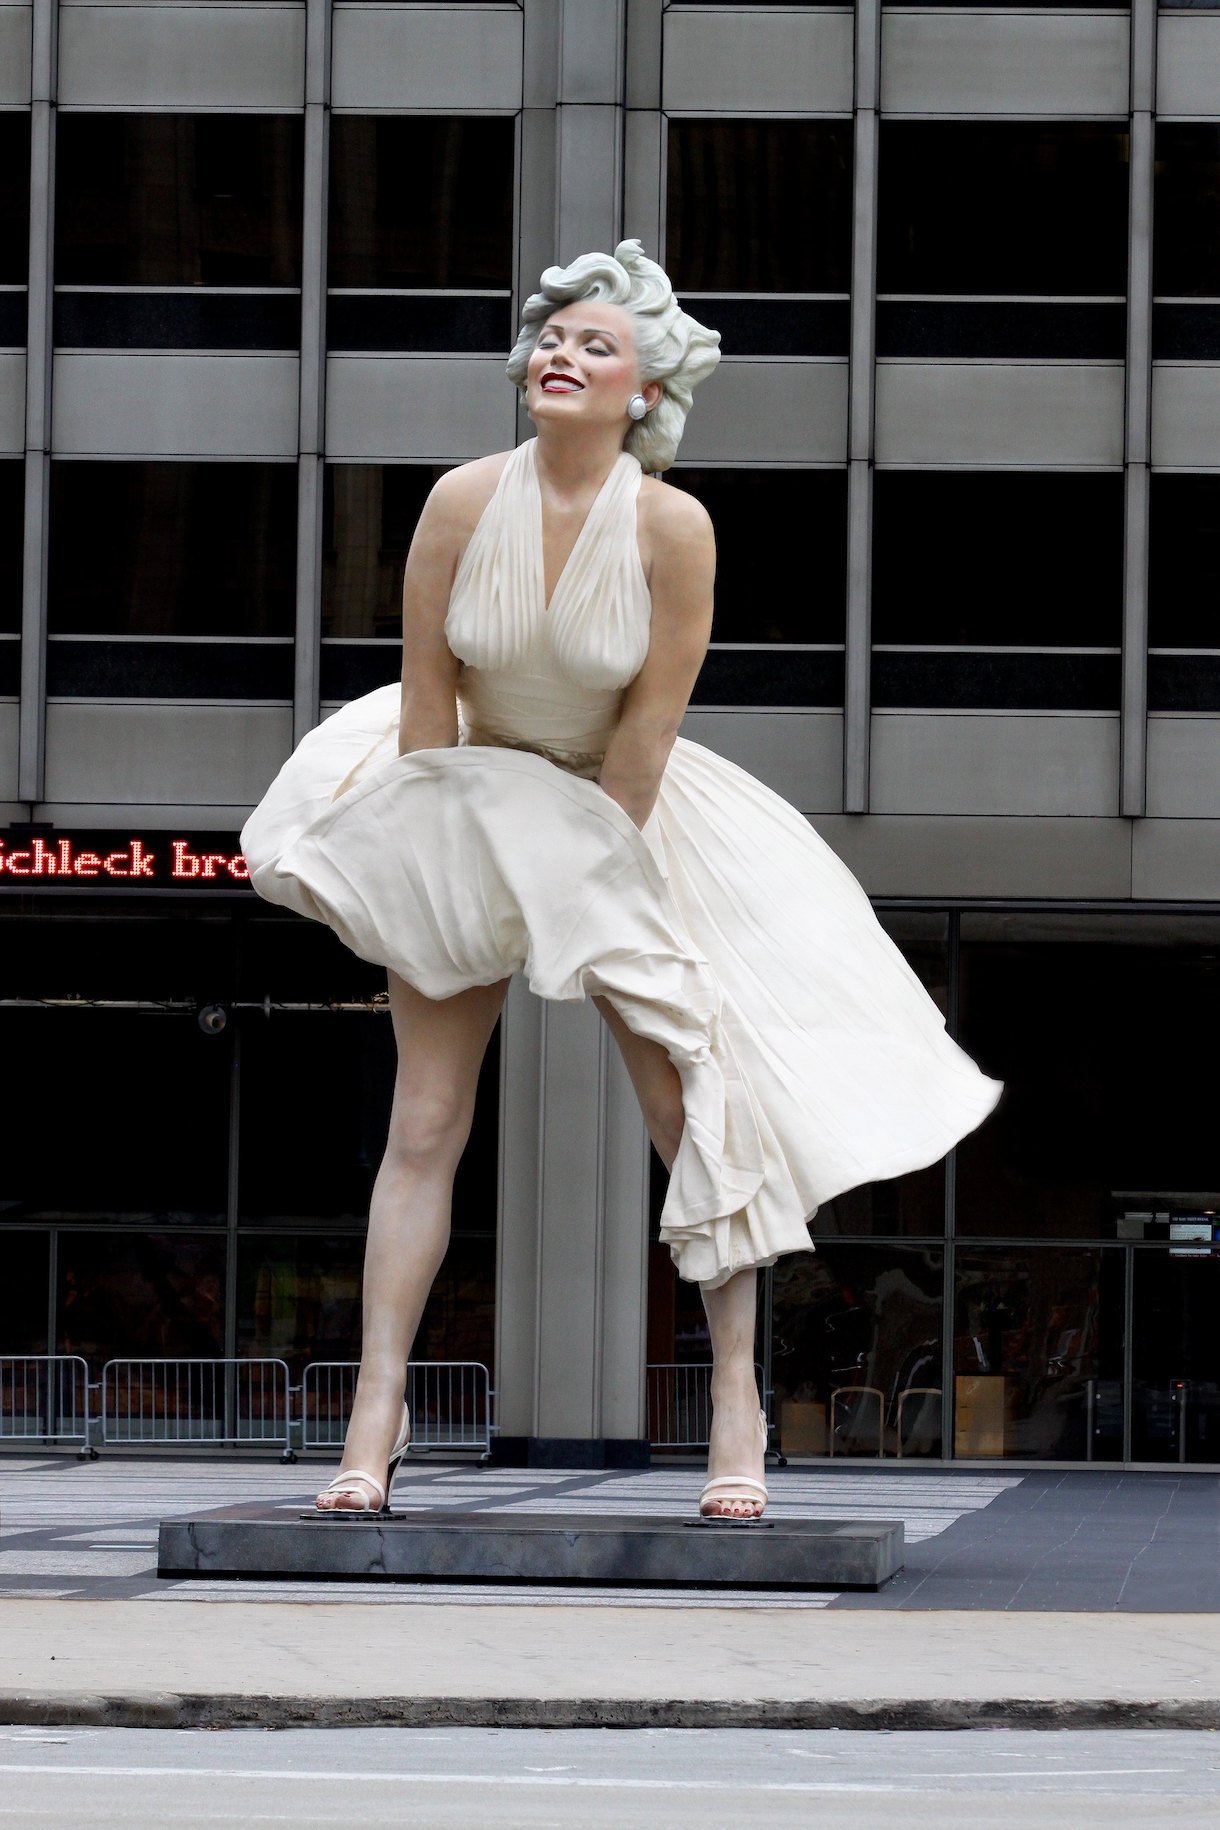 J. Seward Johnson's, "Forever Marilyn" statue